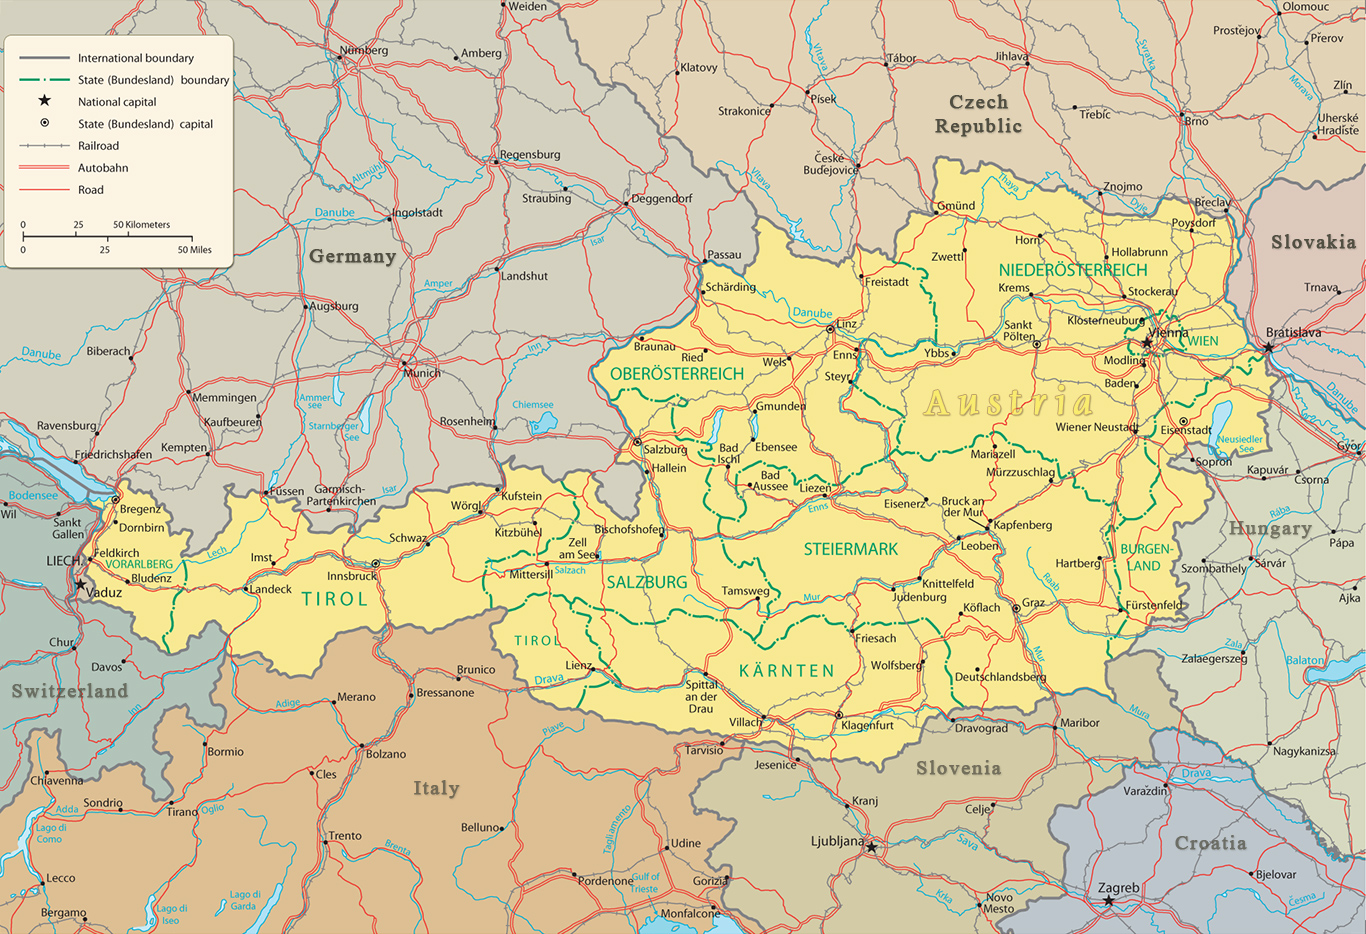 austria-political-map.jpg